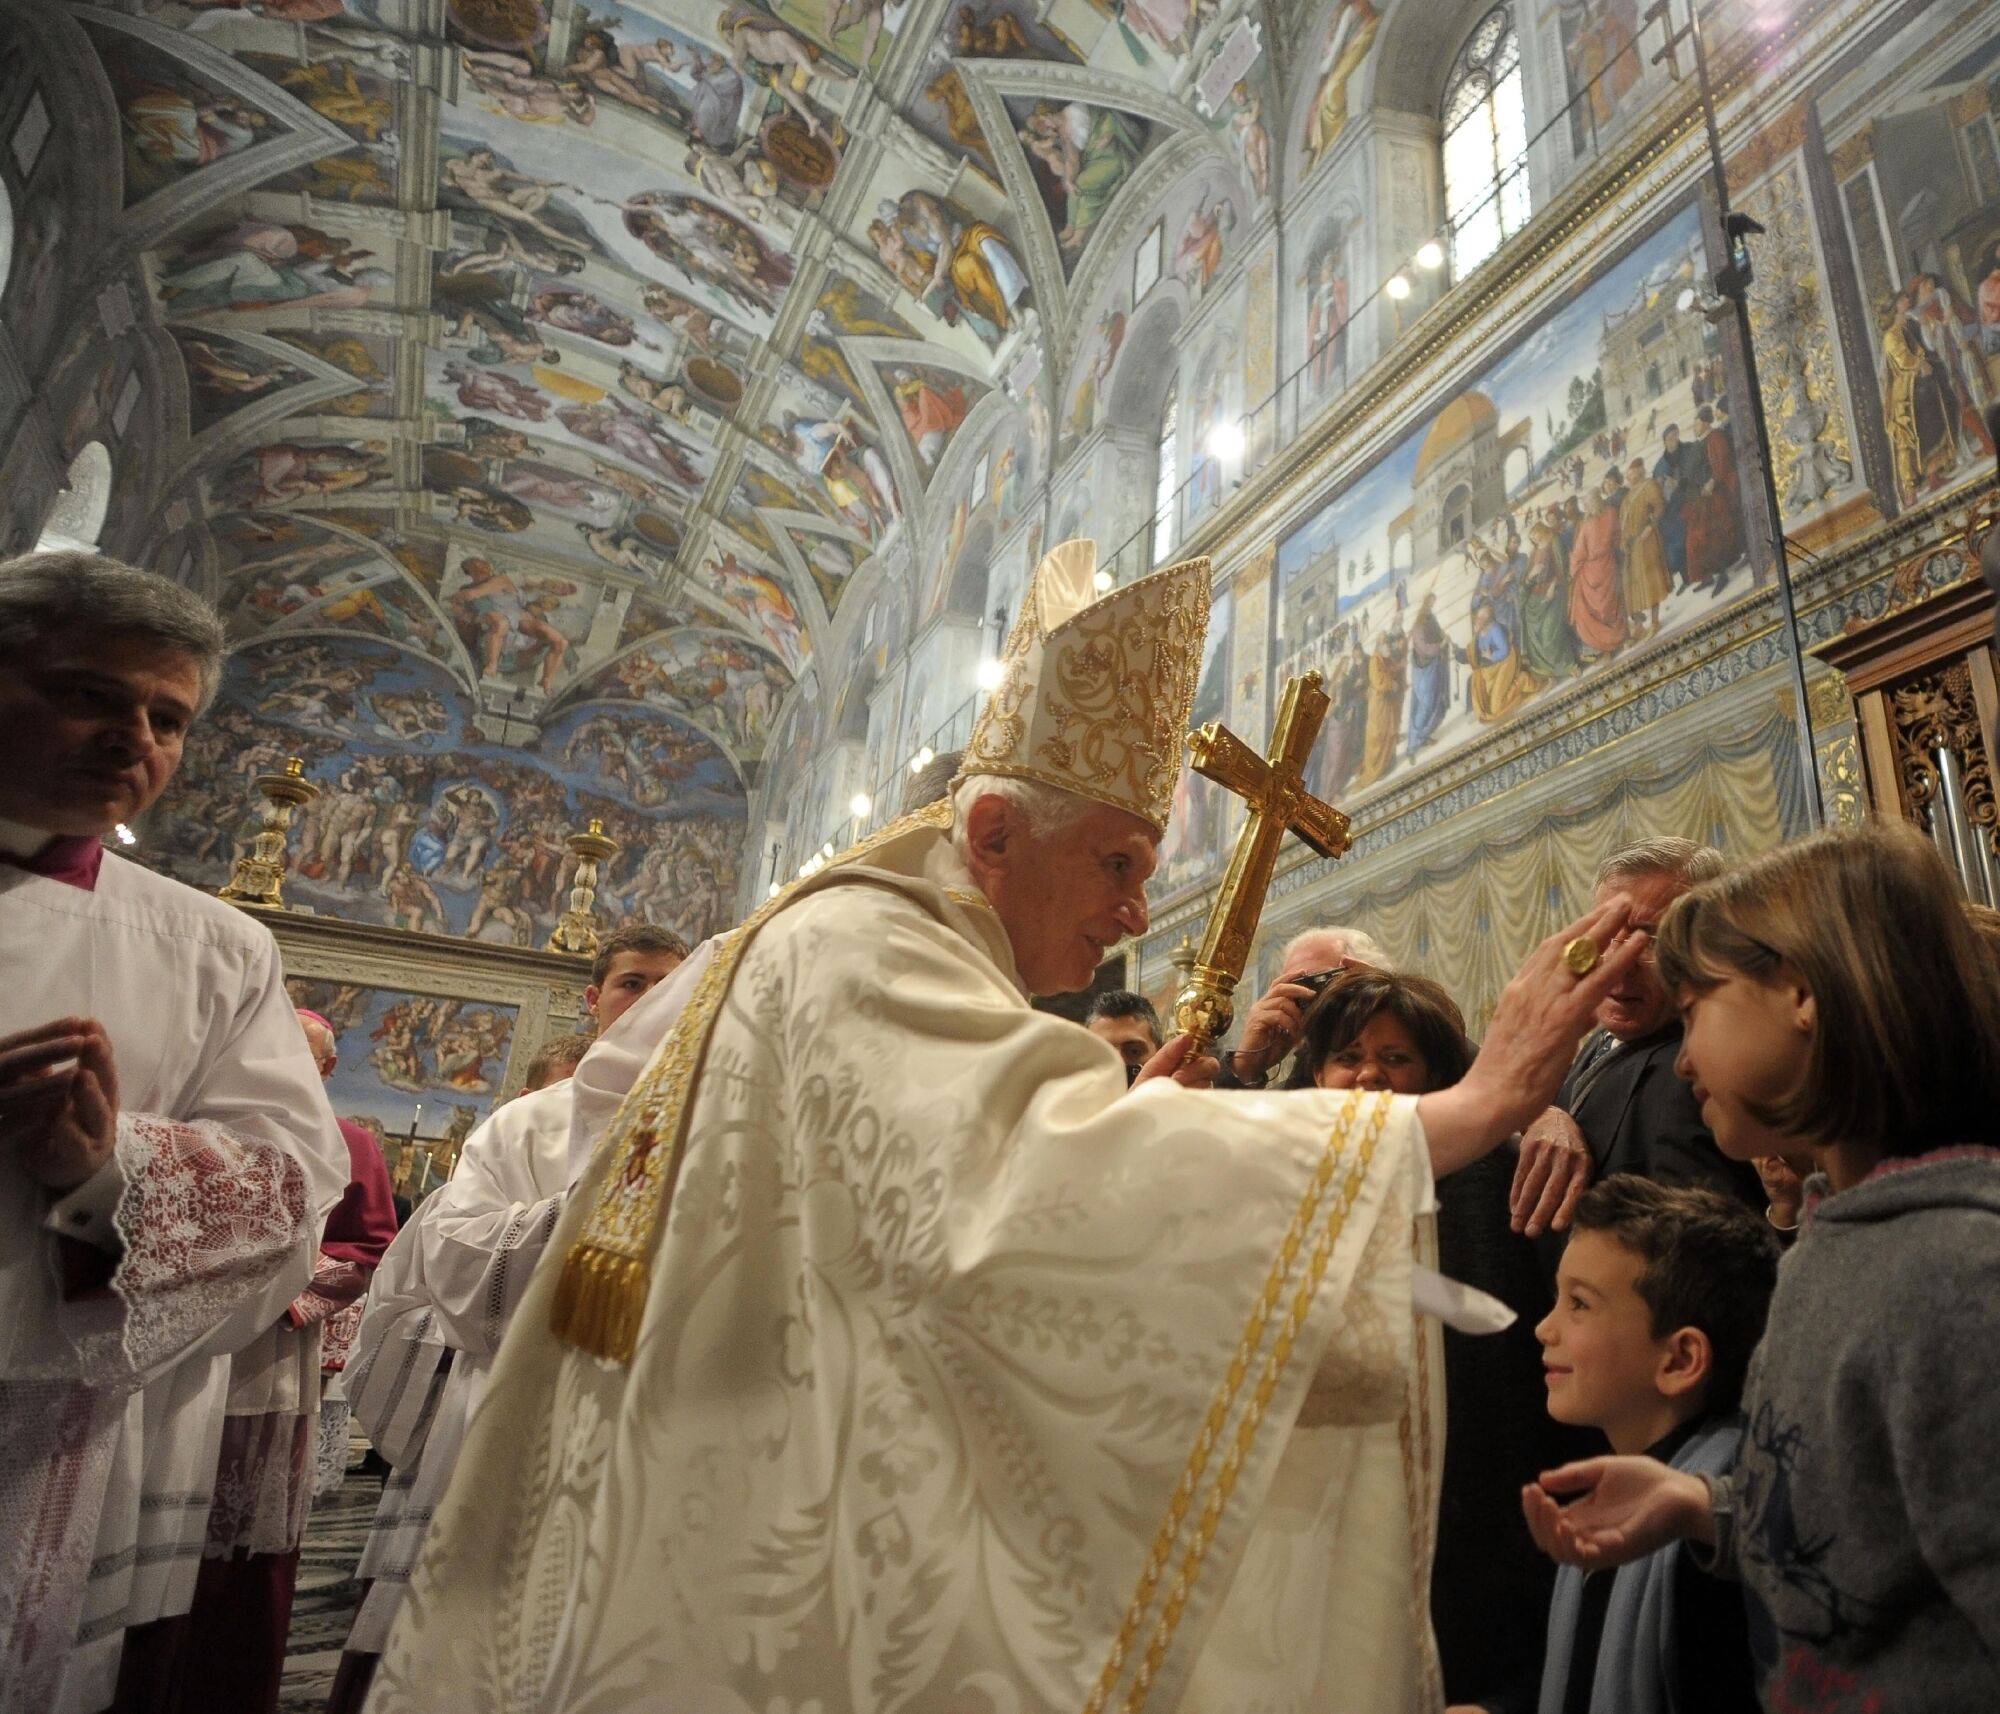 پاپ بندیکت شانزدهم با جلیقه های سفید دستی به سوی کودکان در کلیسای سیستین دراز می کند.